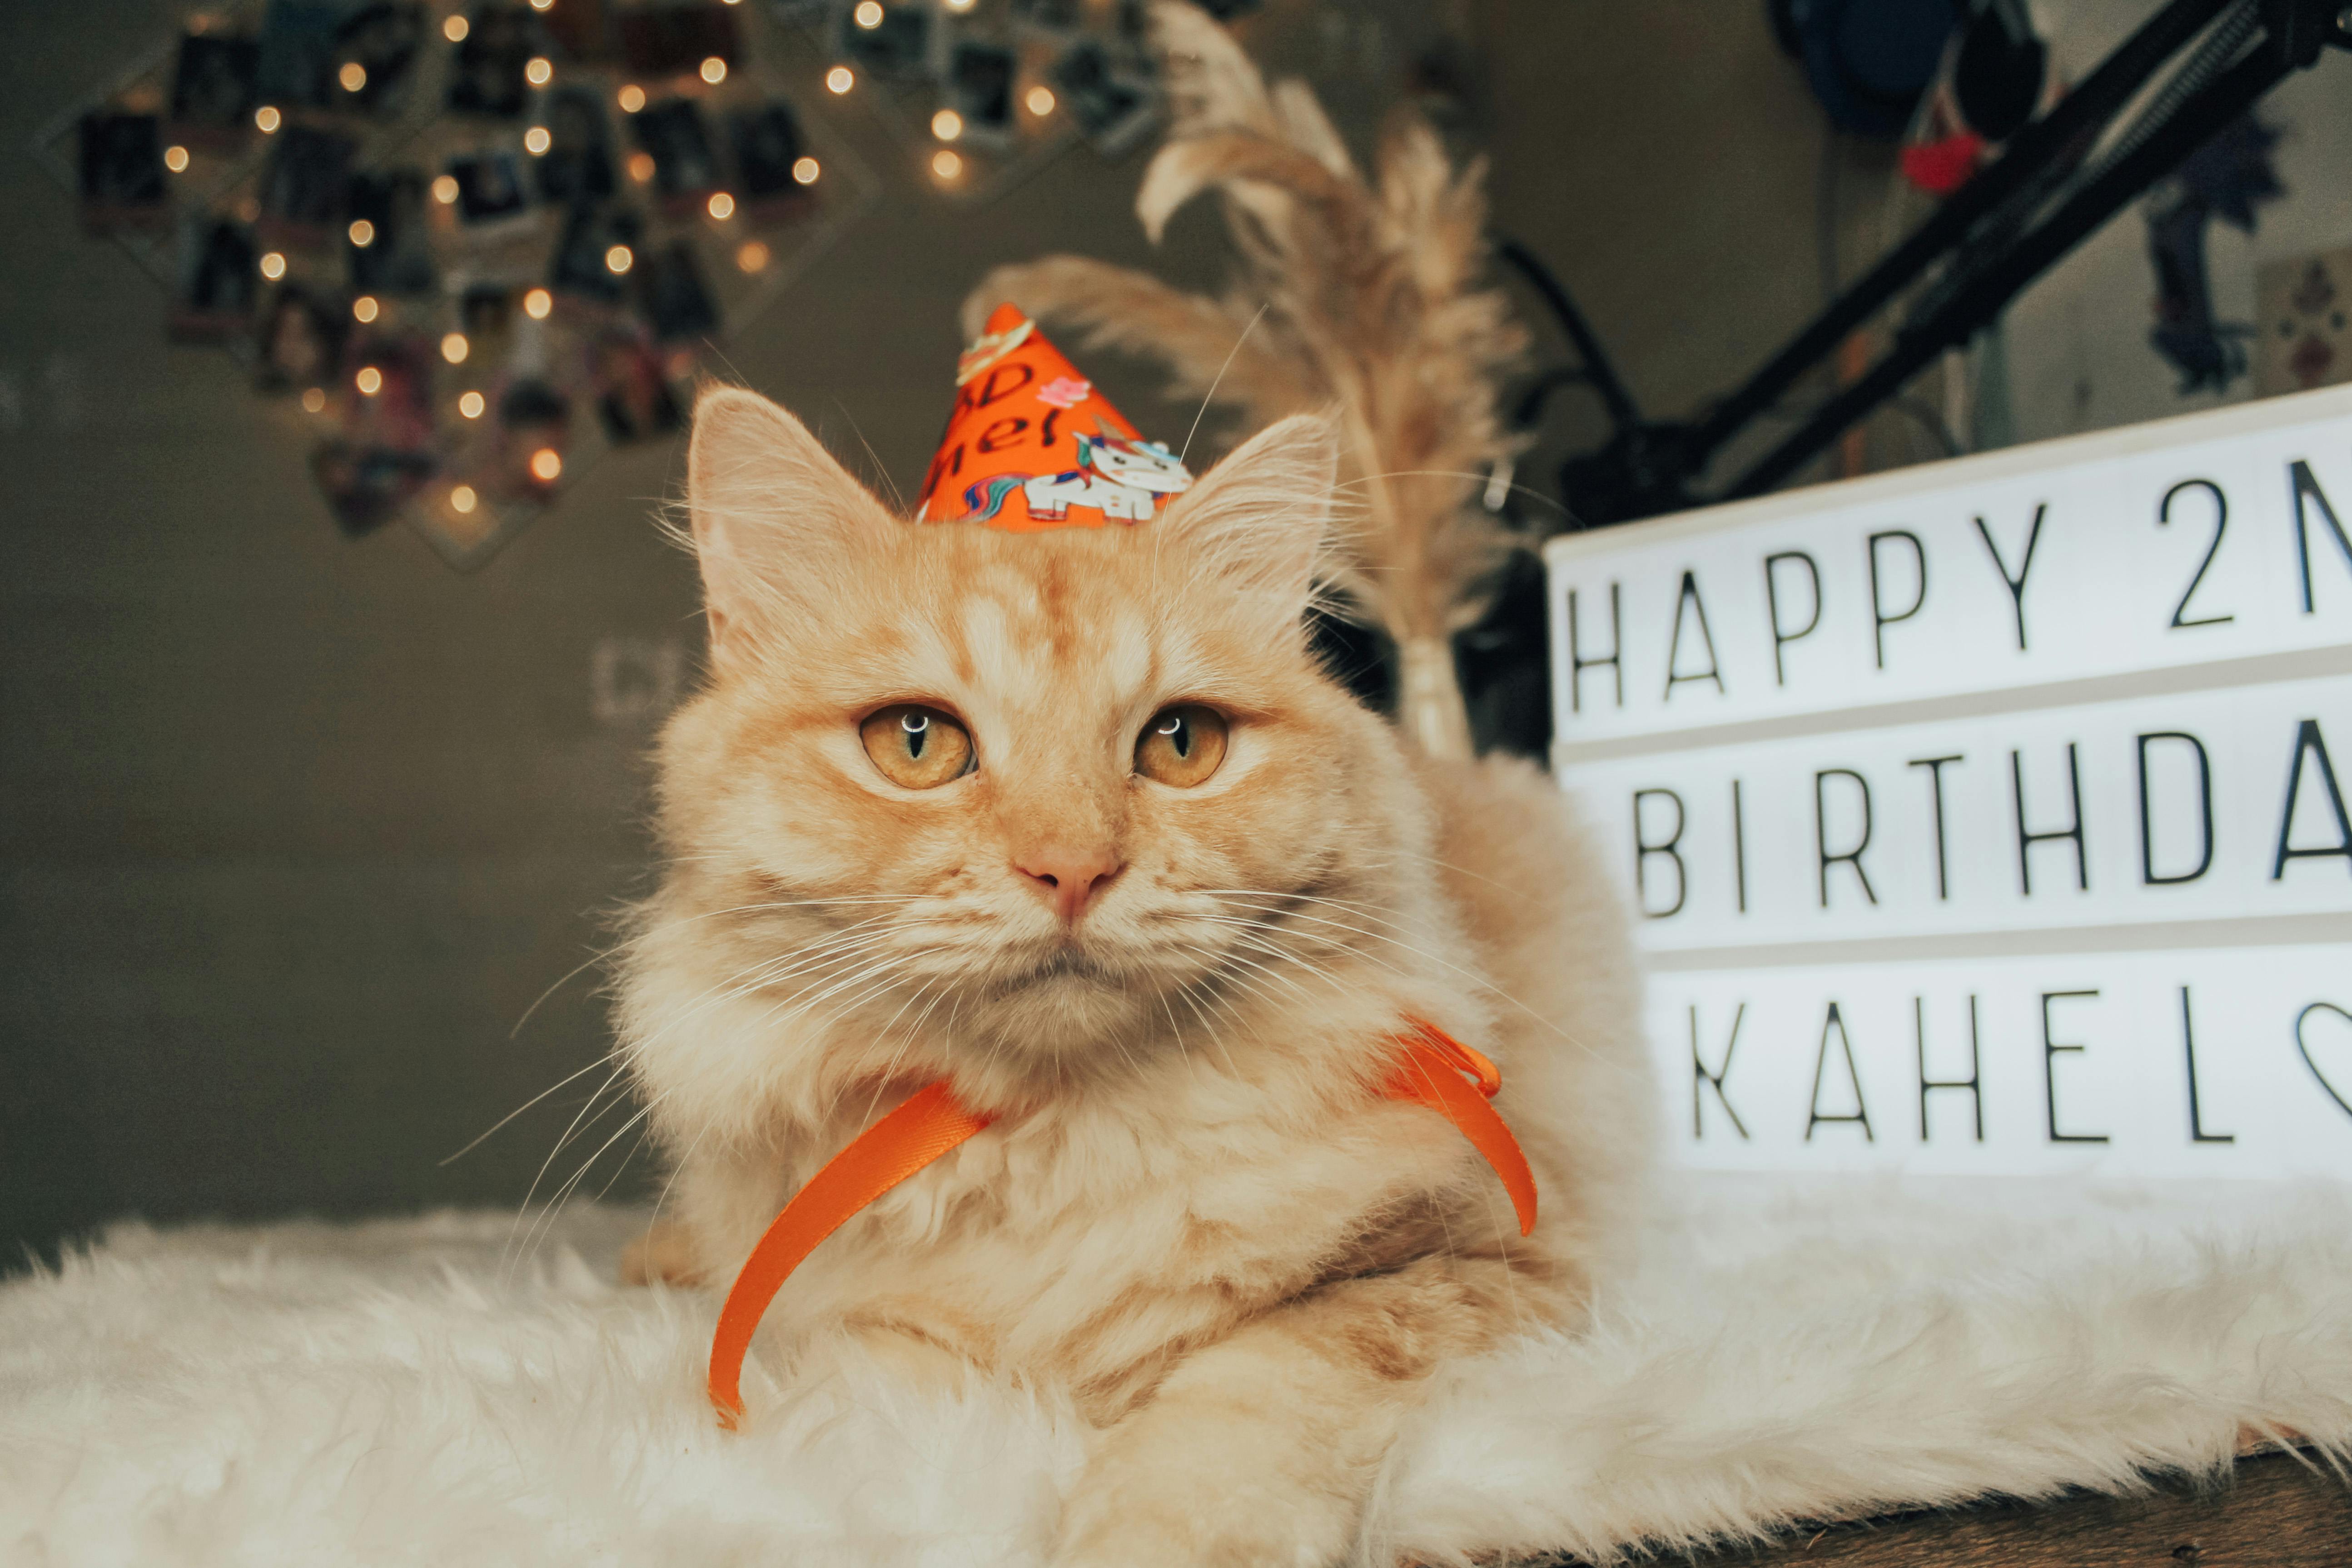 happy birthday orange cat images